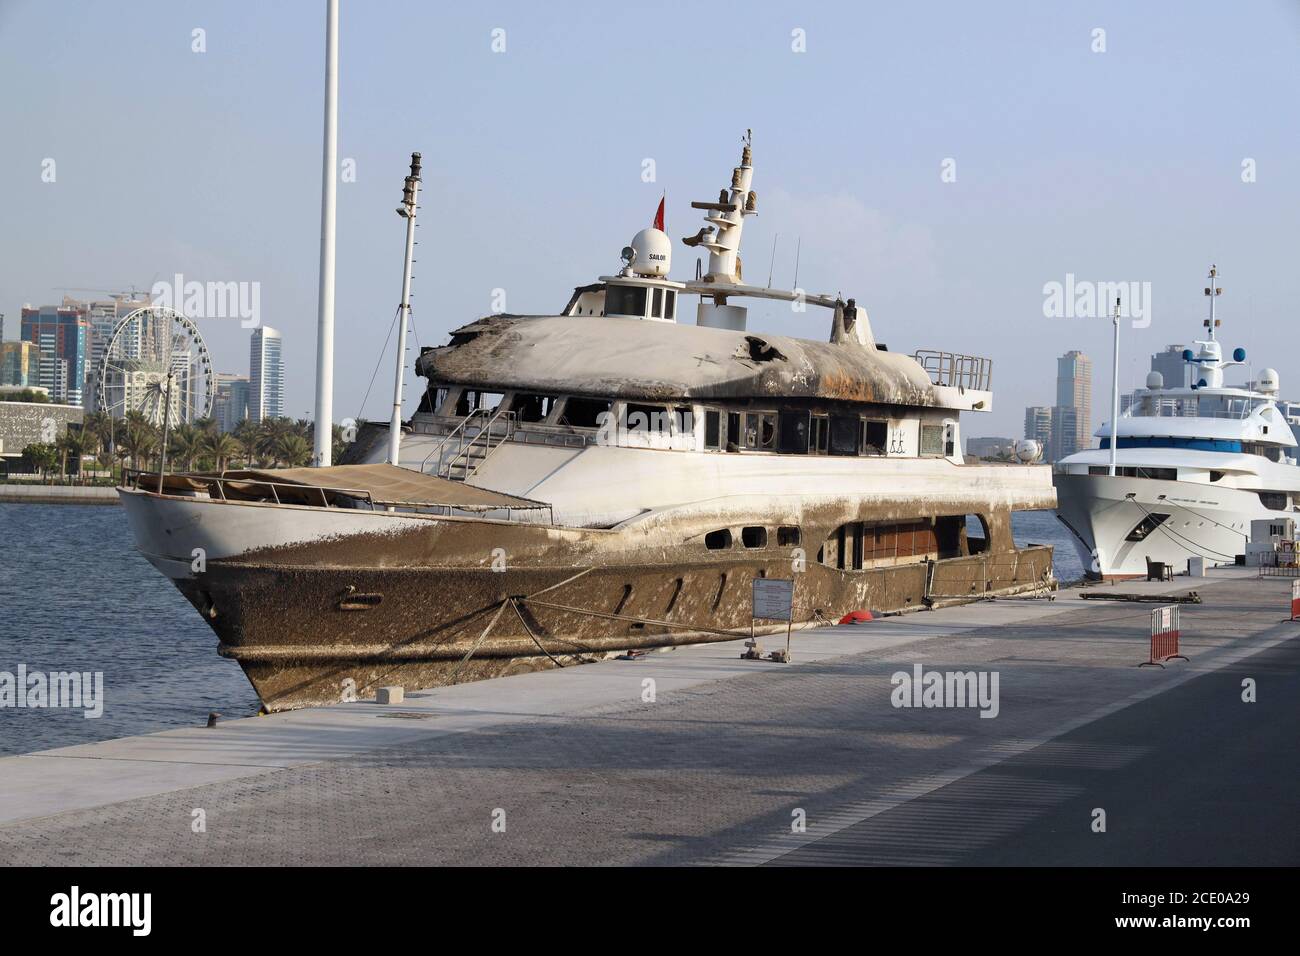 Un pequeño barco privado de acero quemado sin nombre comercial en contra El fondo de los rascacielos urbanos de Dubai Foto de stock